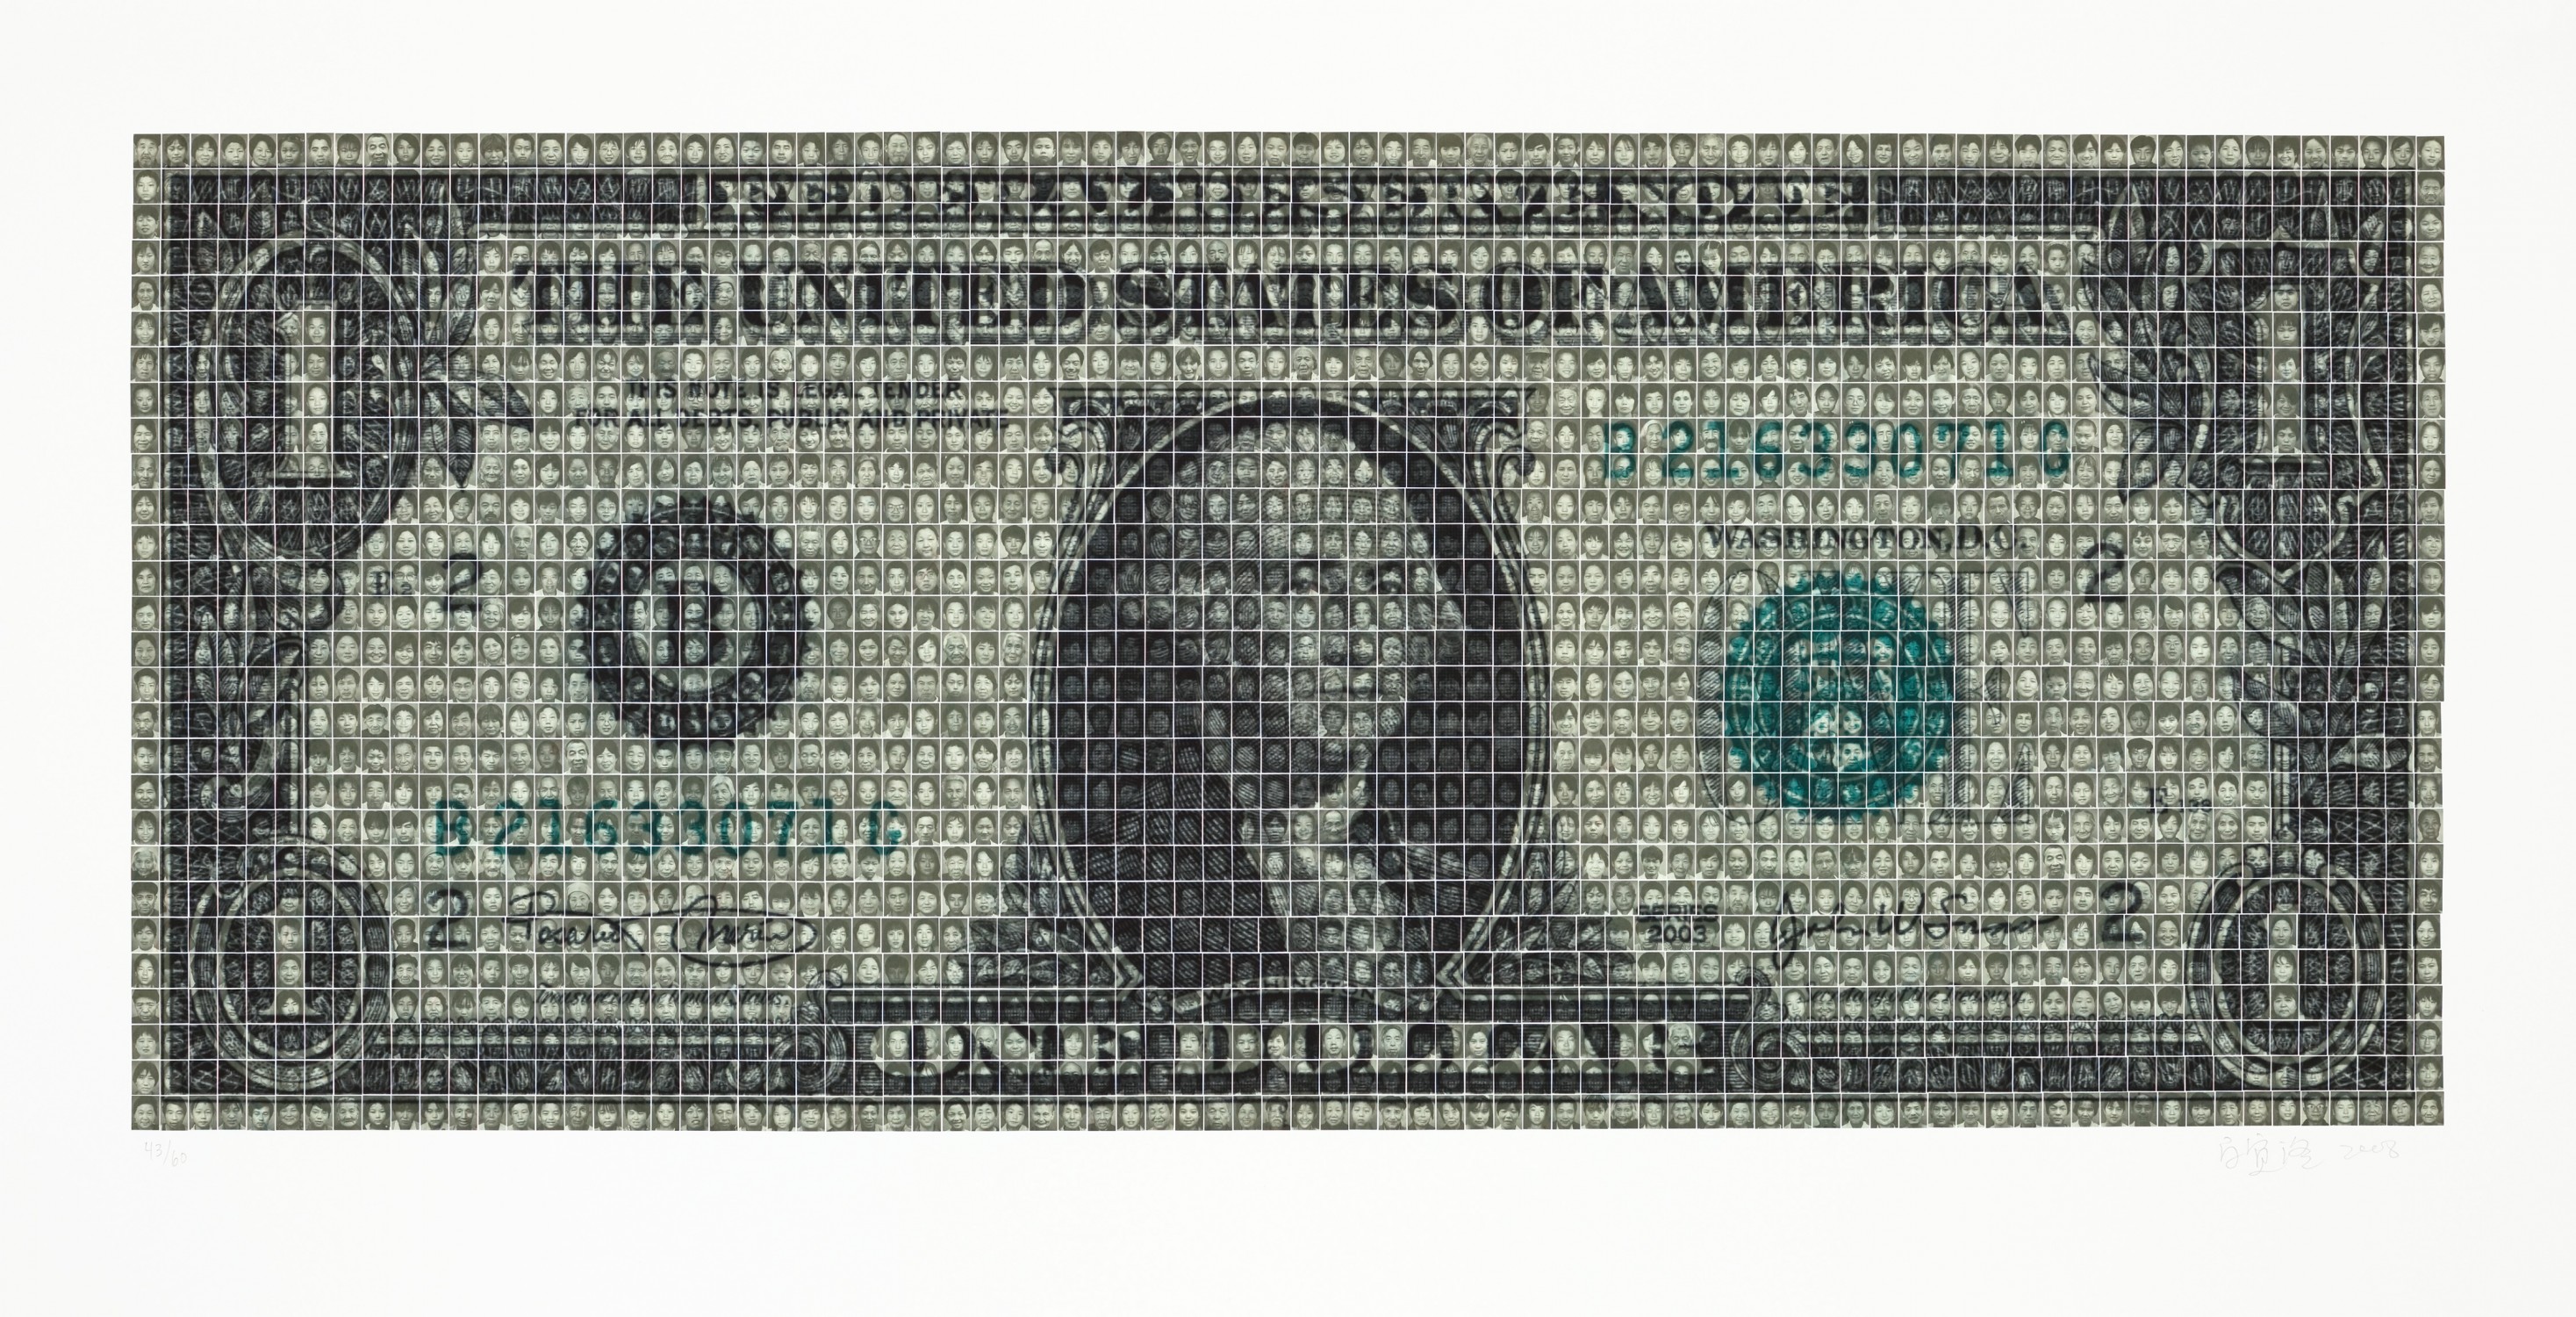 Untitled (US Dollar Bill) by Bai Yiluo (2008)